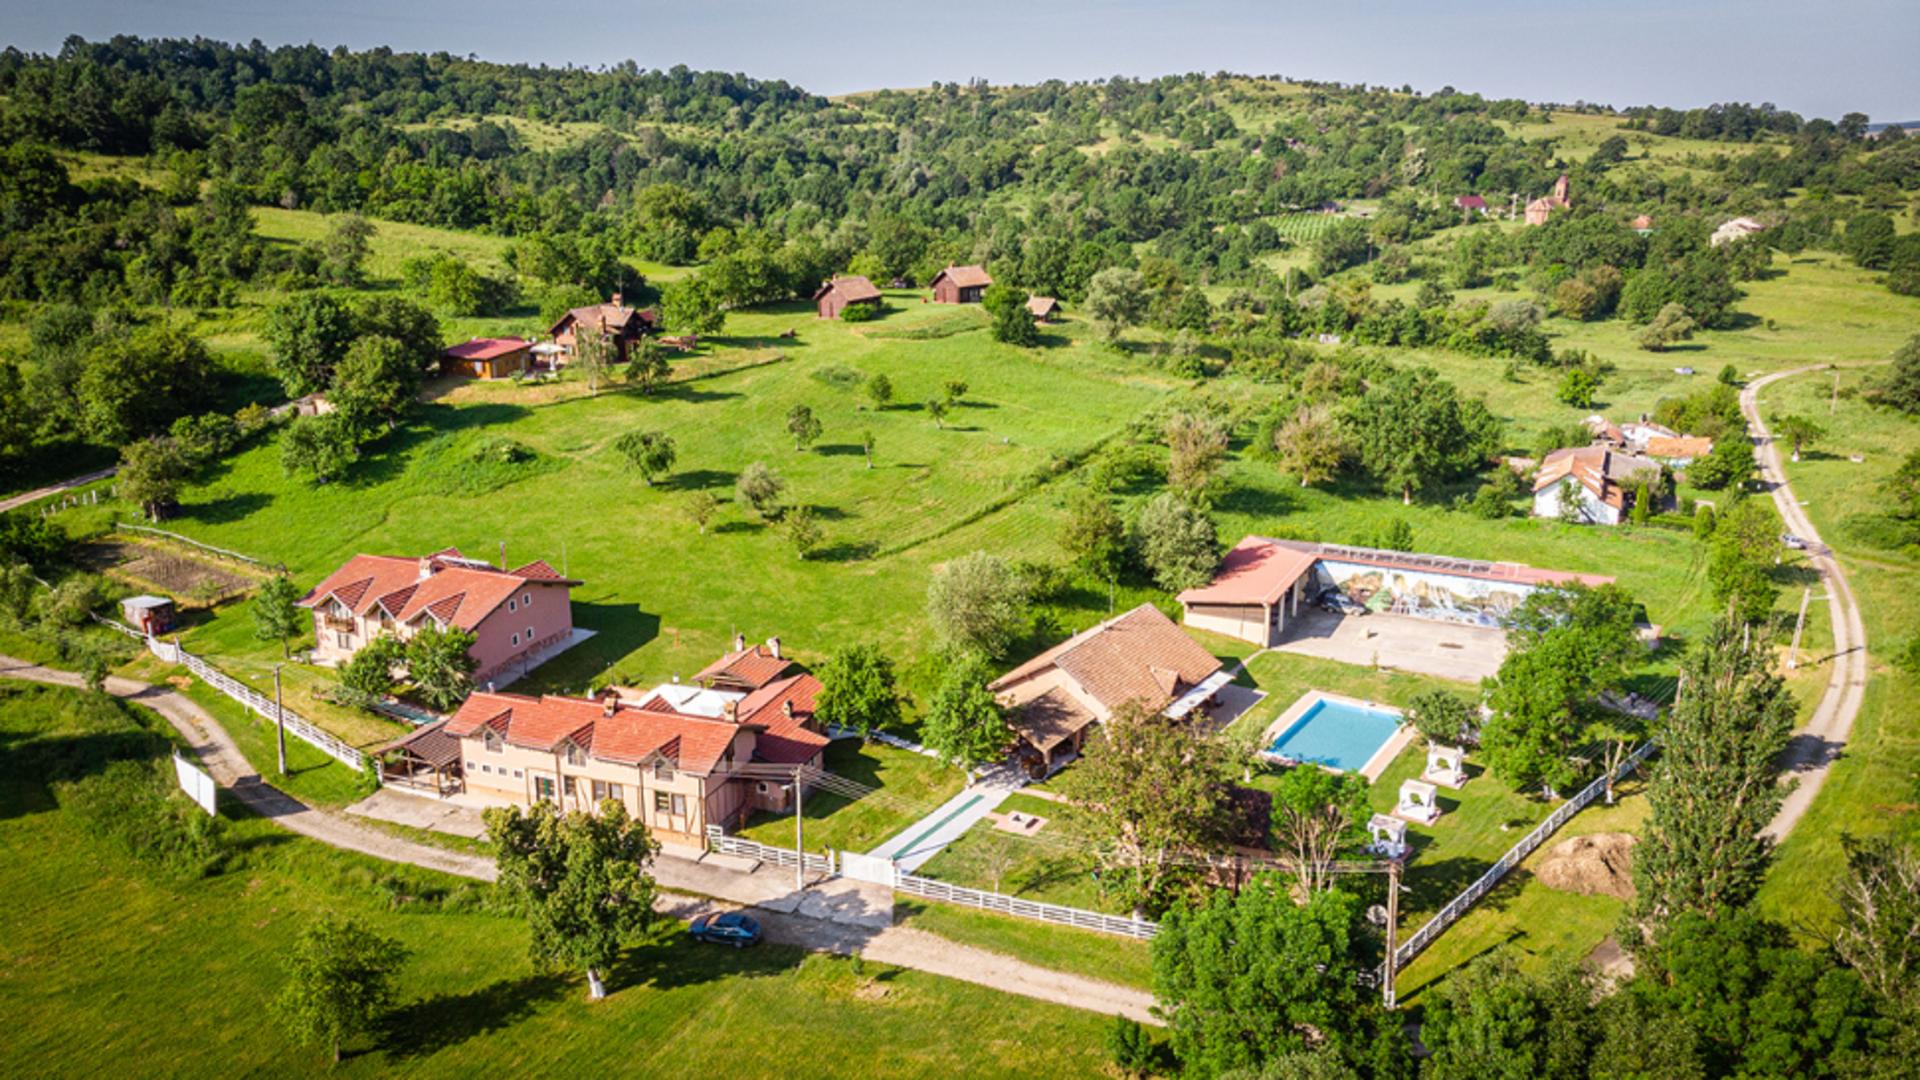  Cum ajung pământurile României pe mâinile străinilor - Resort de lux în Arad, în satul cu 10 oameni cumpărat de un miliardar italian